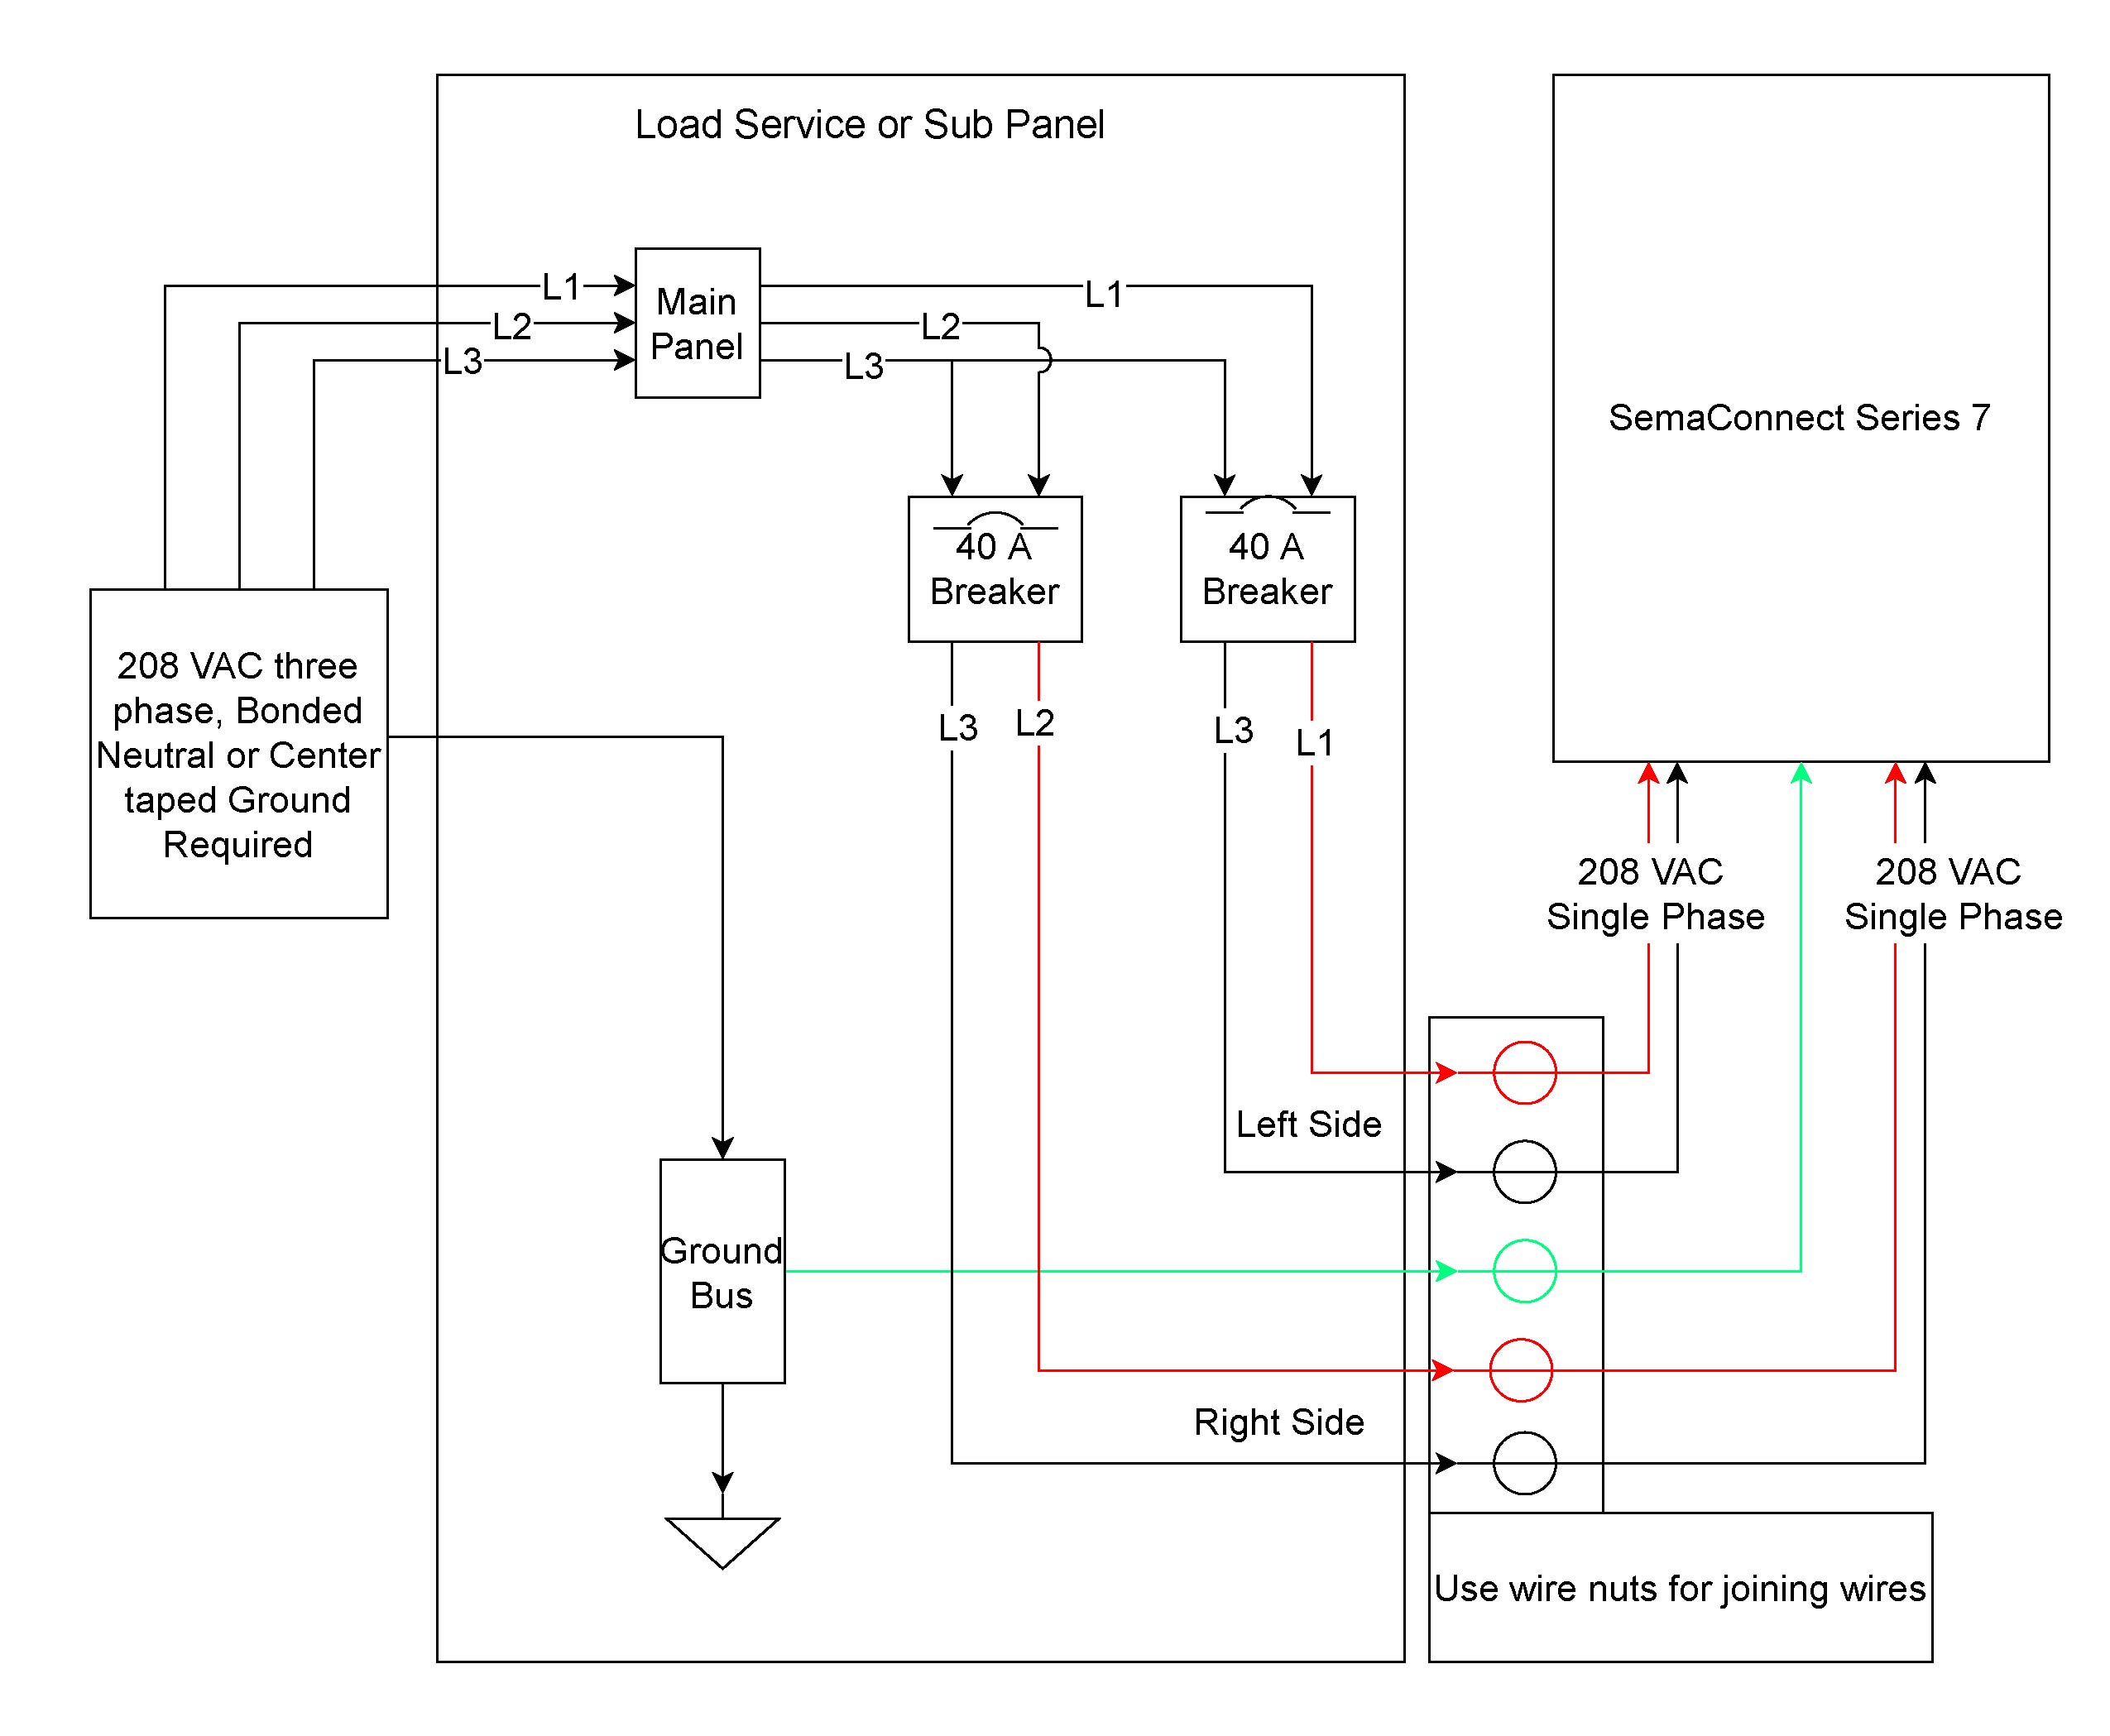 grundfos circulating pump wiring diagram